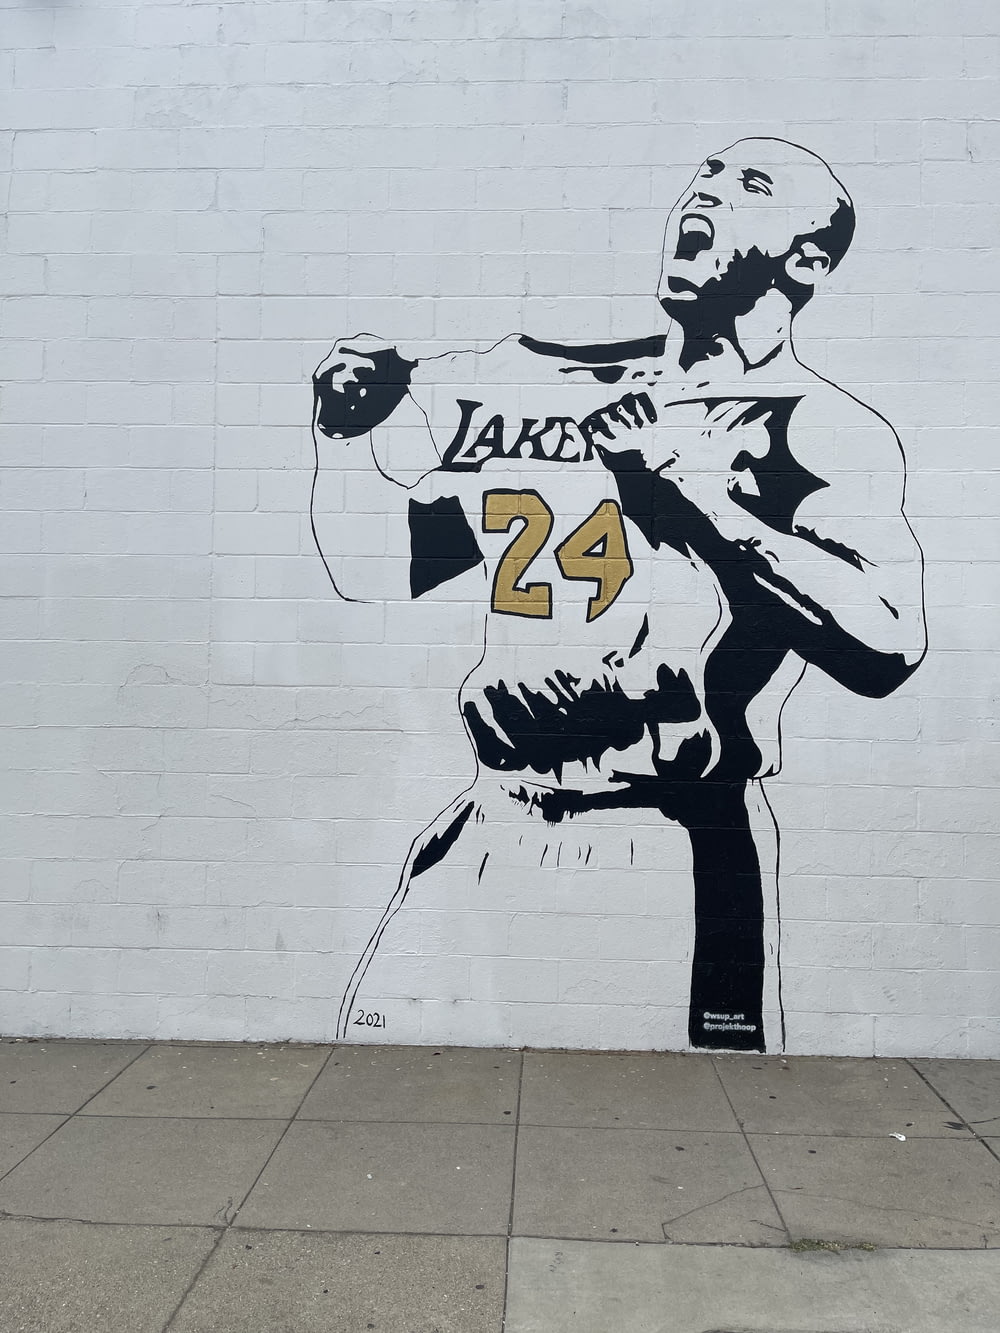 a mural of a man holding a baseball bat